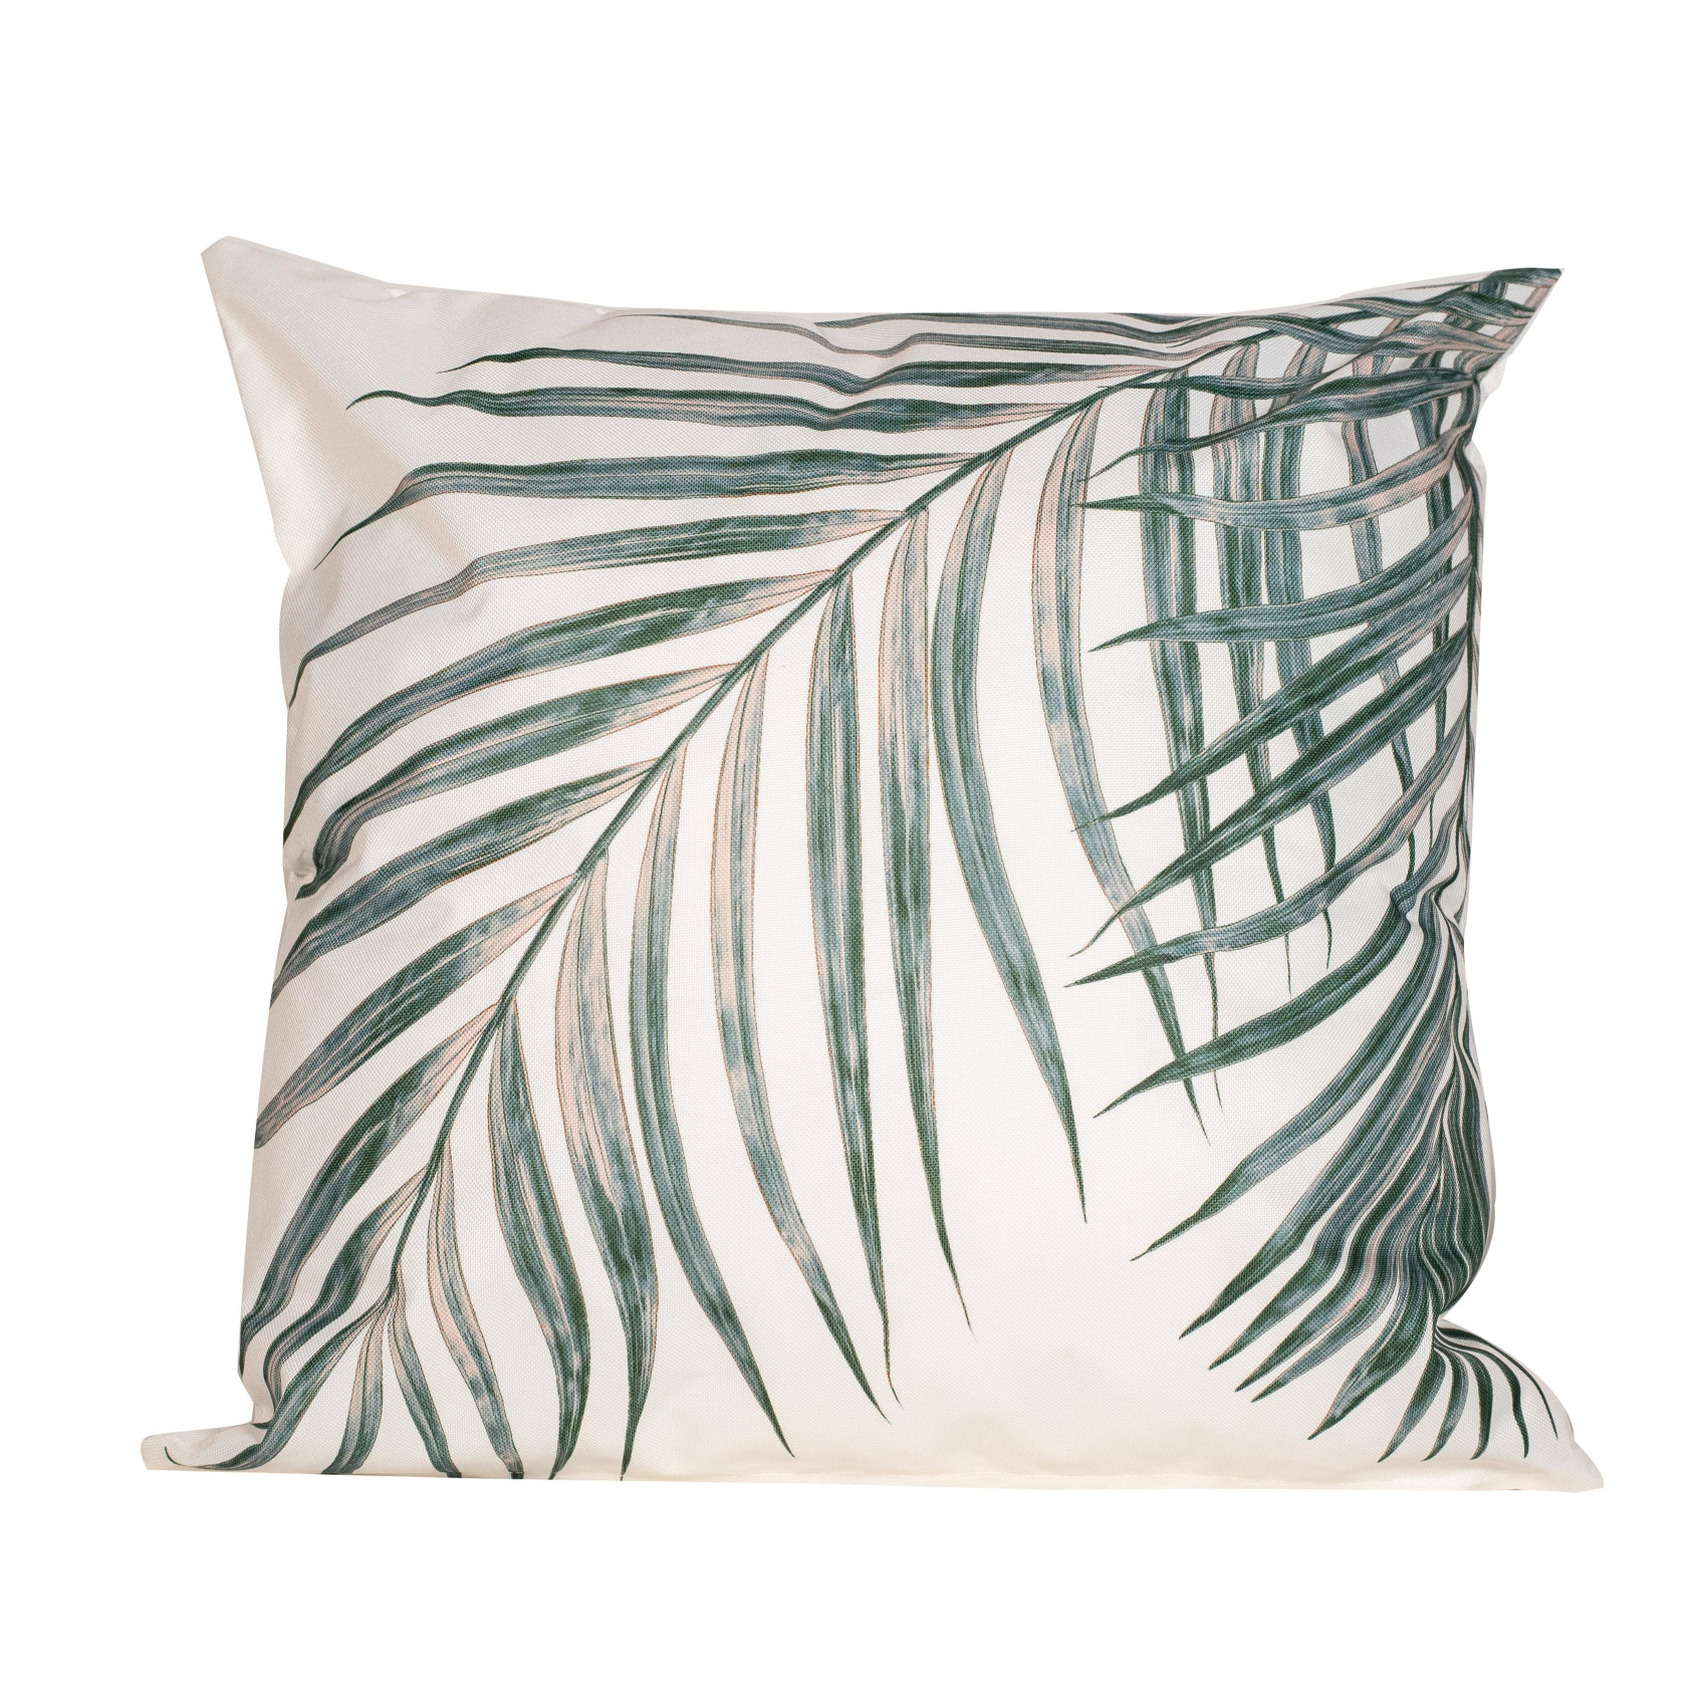 1x Bank-sier kussens met palm plant-blad print voor binnen en buiten 45 x 45 cm